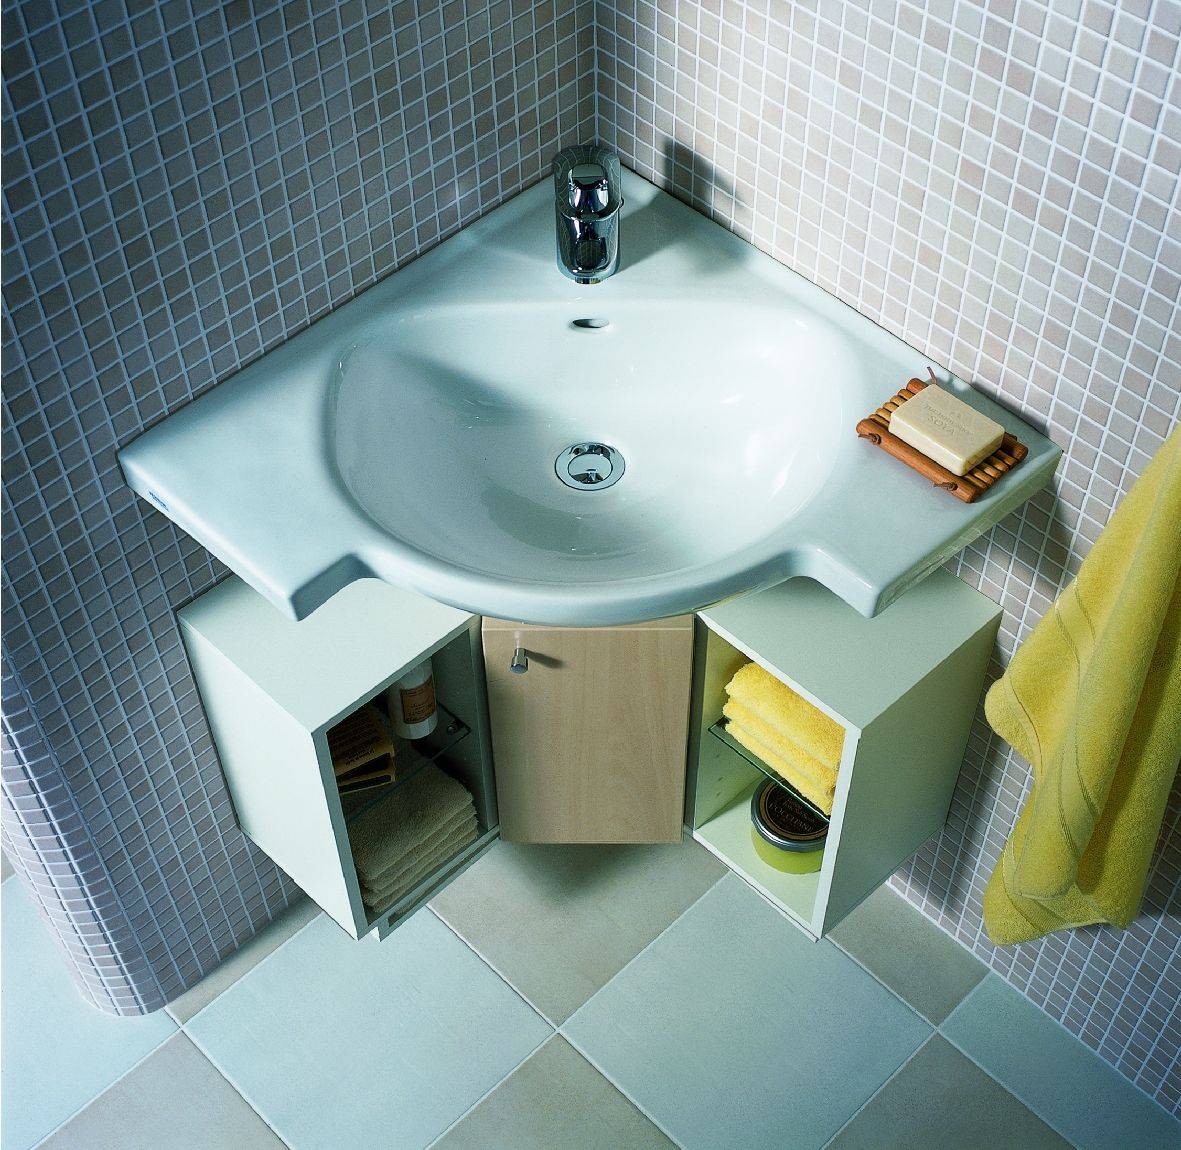 Угловые раковины в ванную комнату: общий обзор + инструкция по установке